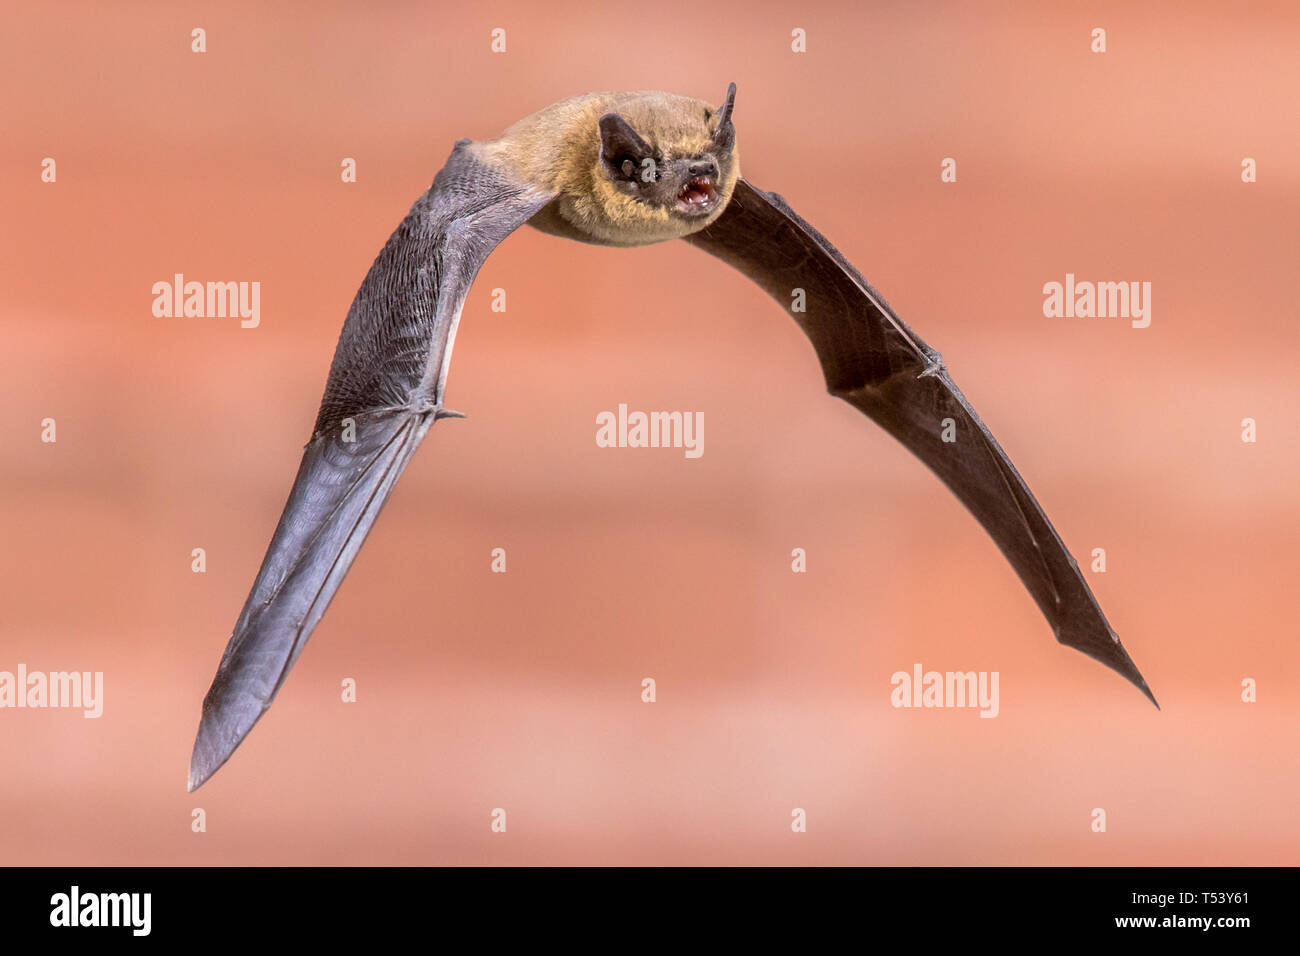 Pipistrelle bat (Pipistrellus pipistrellus) fliegen am Dachboden des Hauses auf Mauer Hintergrund im Dunkeln. Diese Sorte ist bekannt für Rast- und Livin Stockfoto